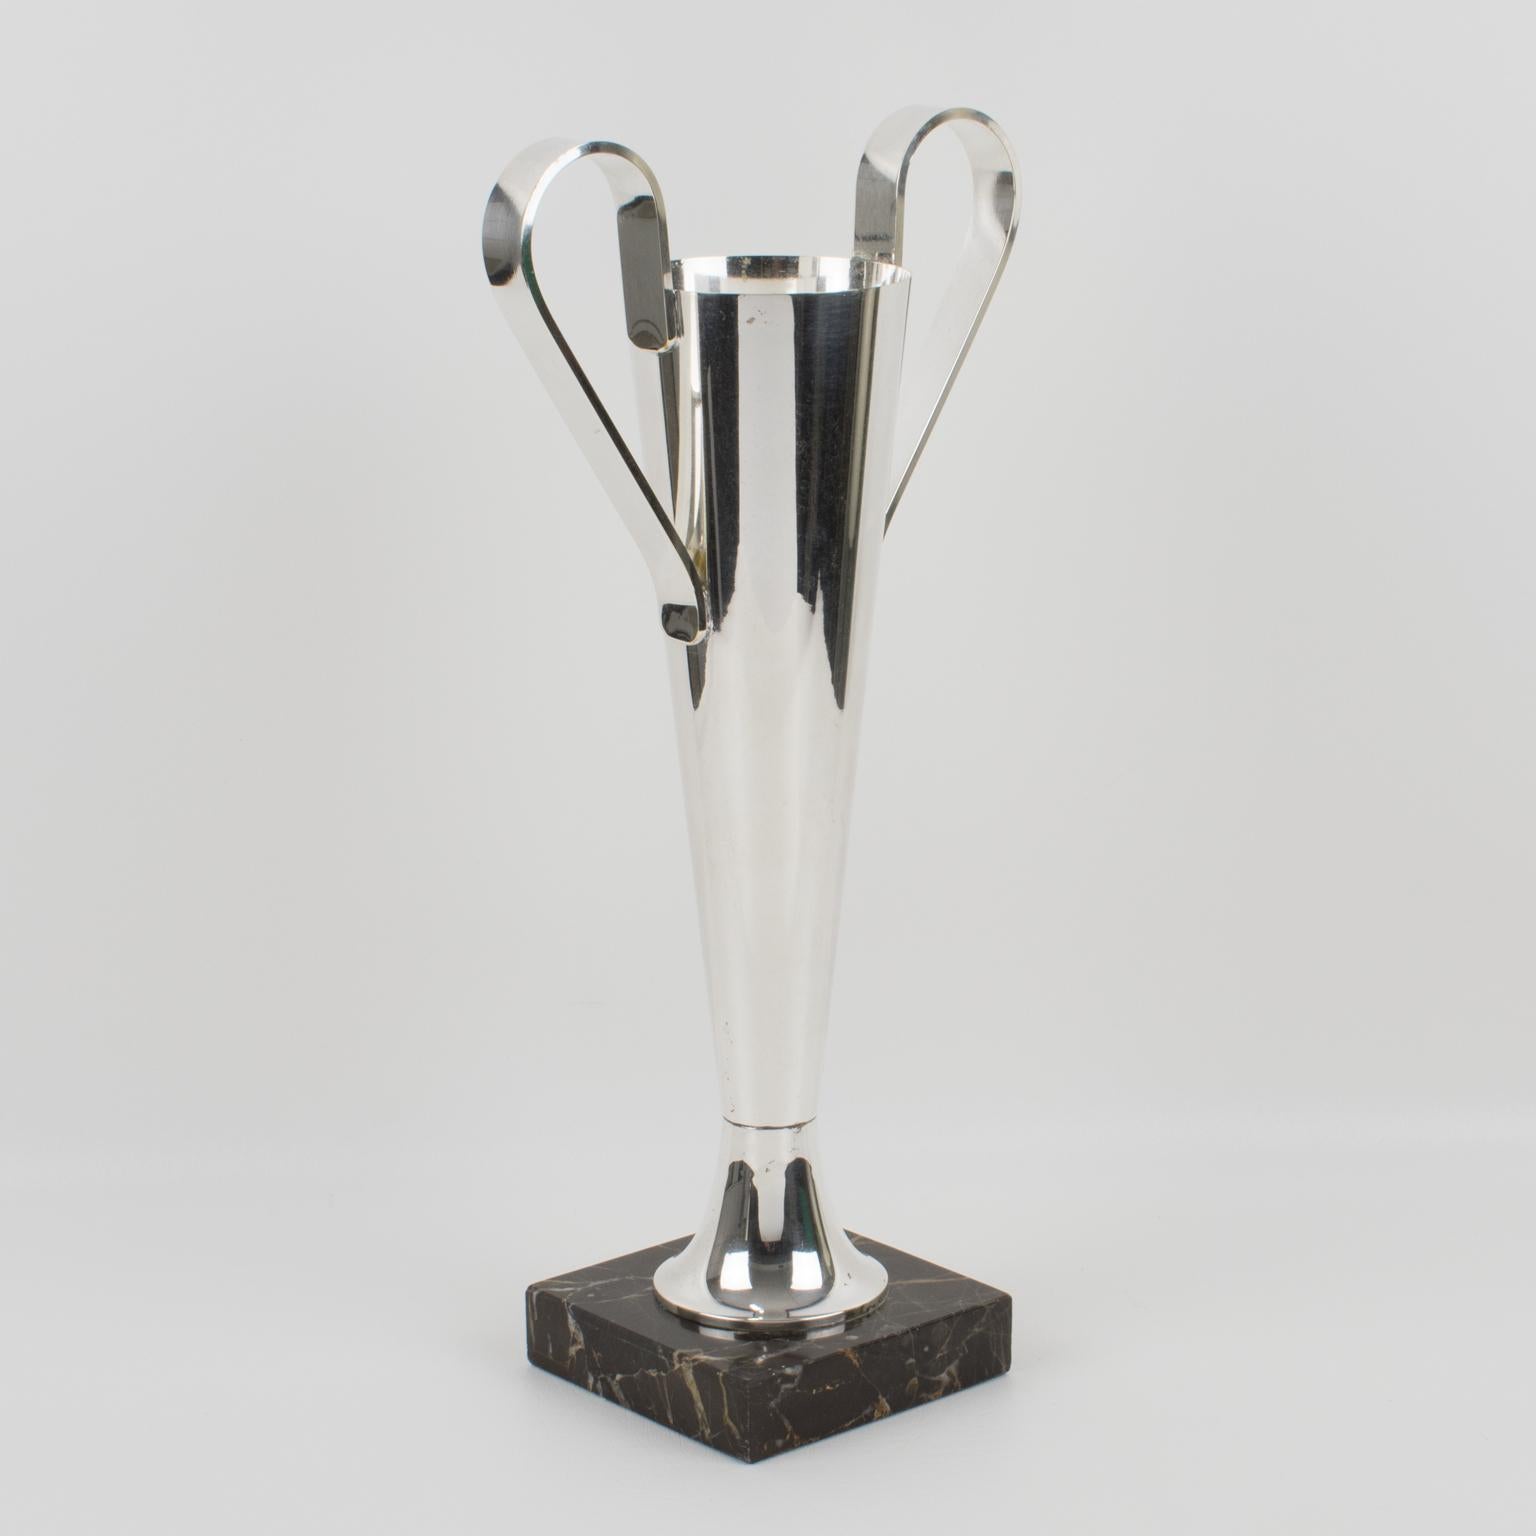 Elegant vase en métal argenté de style Art Déco, avec de larges anses et une base en marbre. Ce vase pourrait être un trophée. Ce récipient a une forme de tulipe profilée, ornée de solides poignées, et repose sur une base carrée en marbre noir